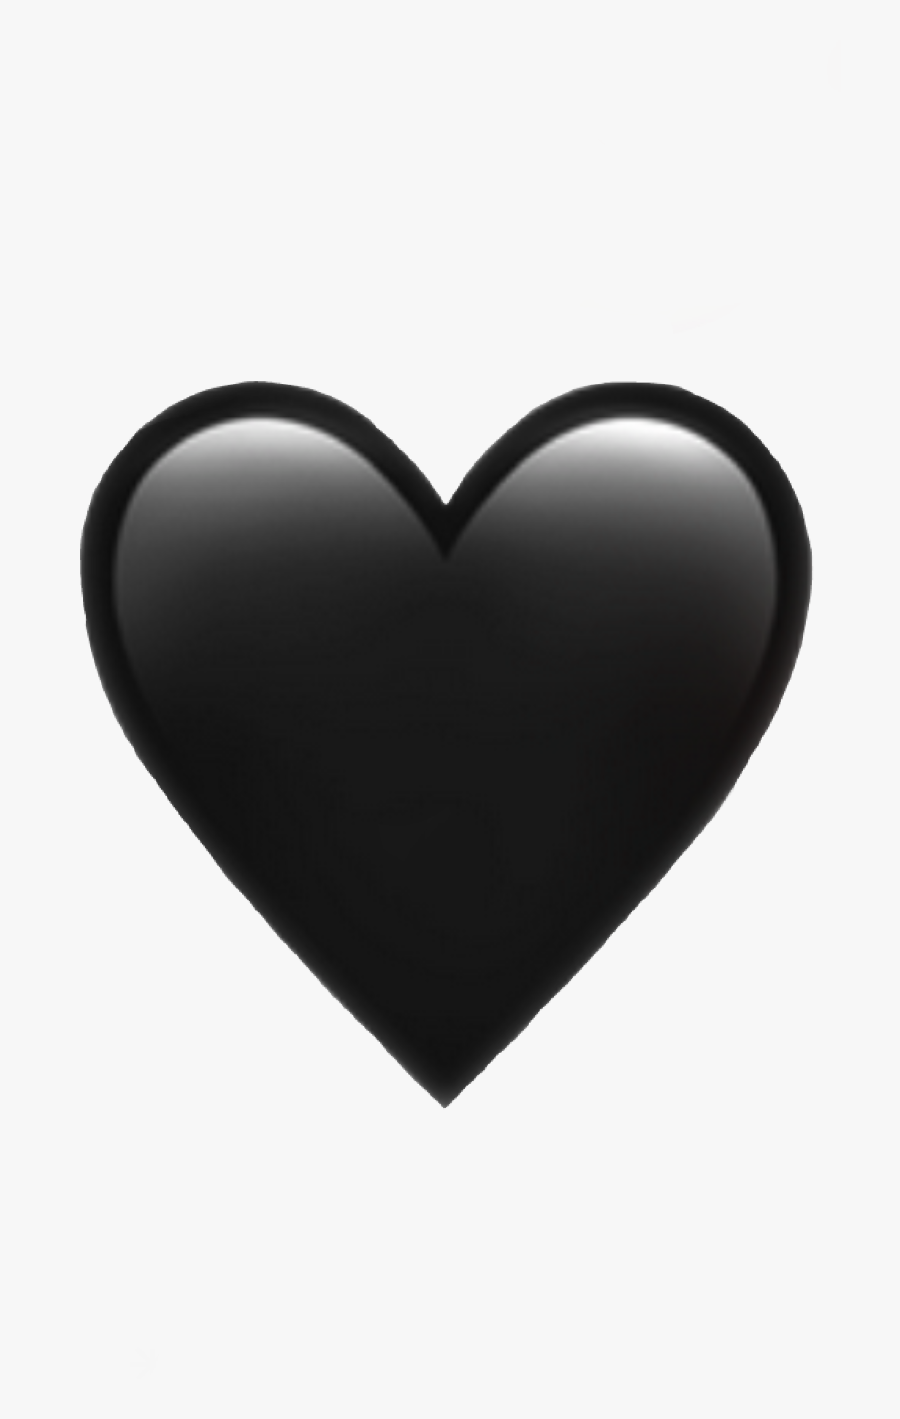 #heart #emoji #iphone #black #emojiiphone #iphoneemoji - Iphone Black Heart Emoji, Transparent Clipart